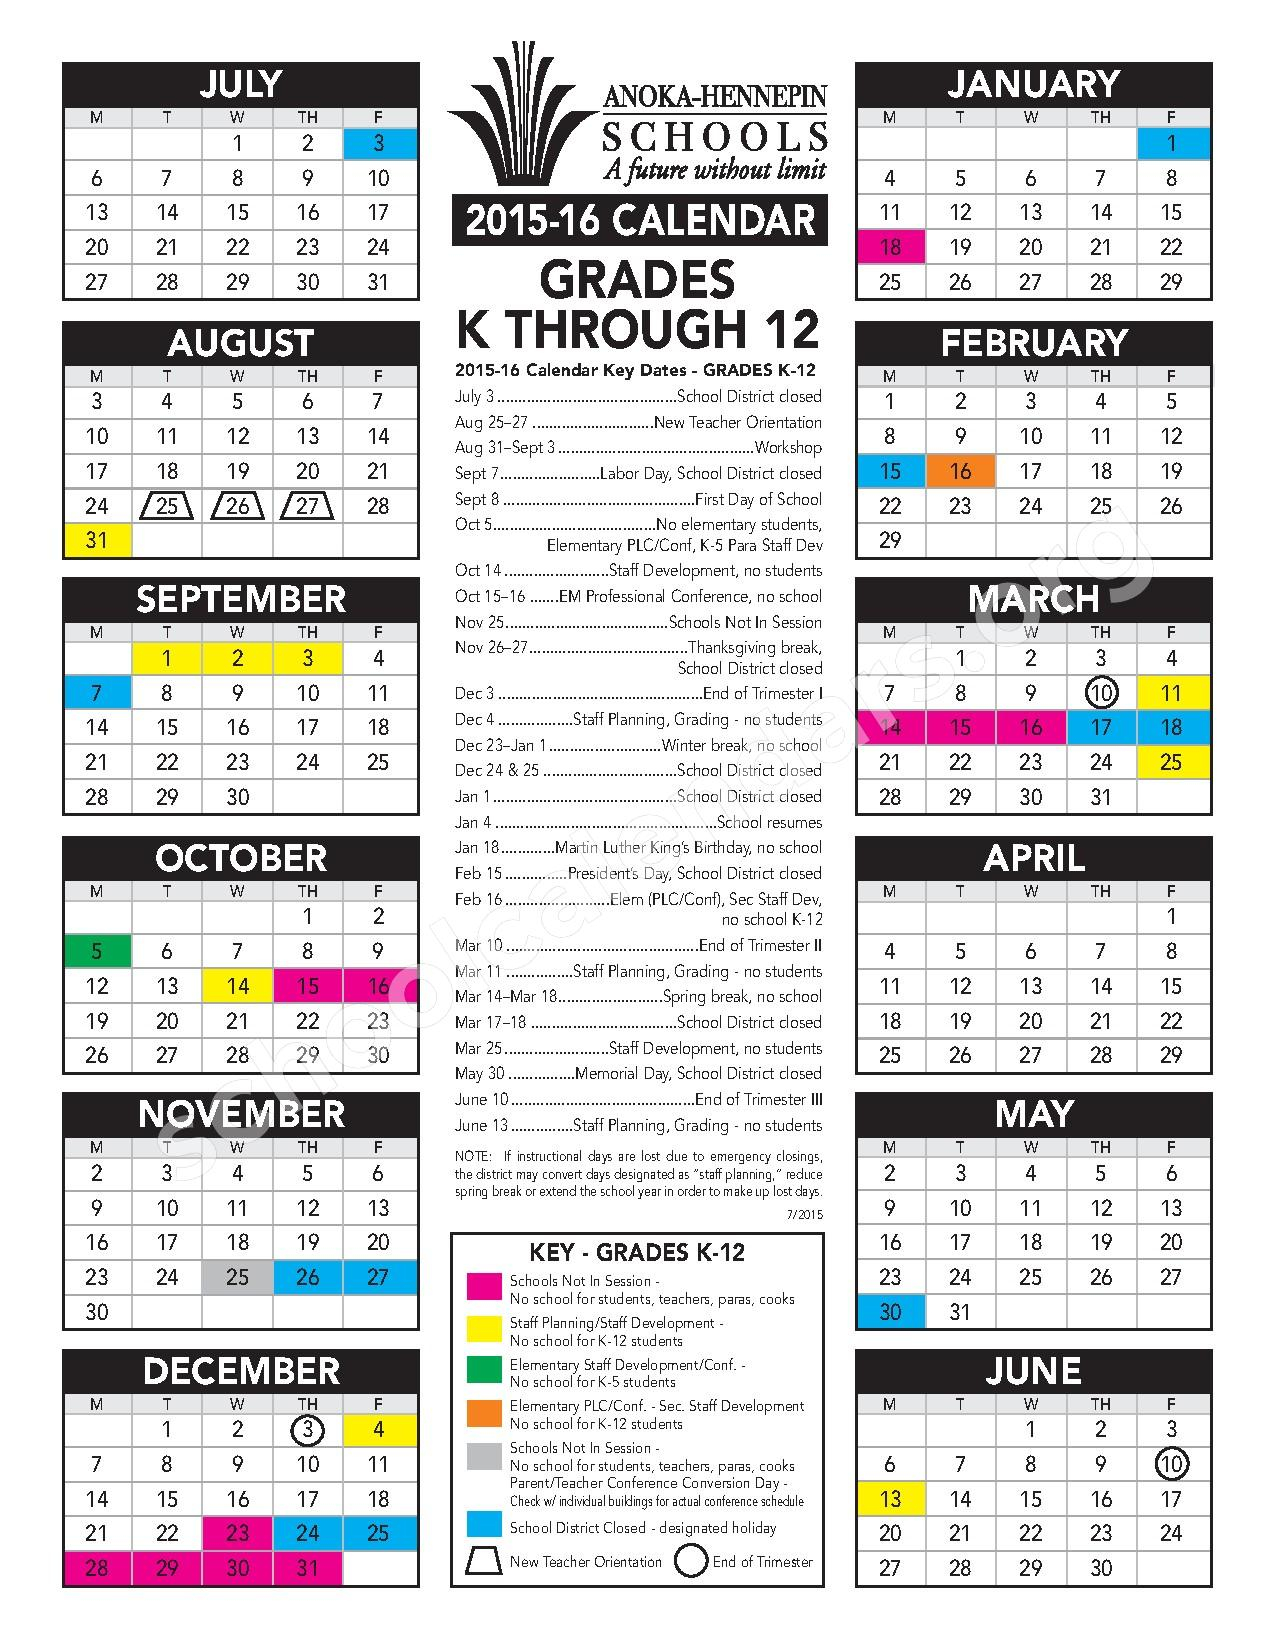 Anoka High School Calendar 2023 Schoolcalendars net